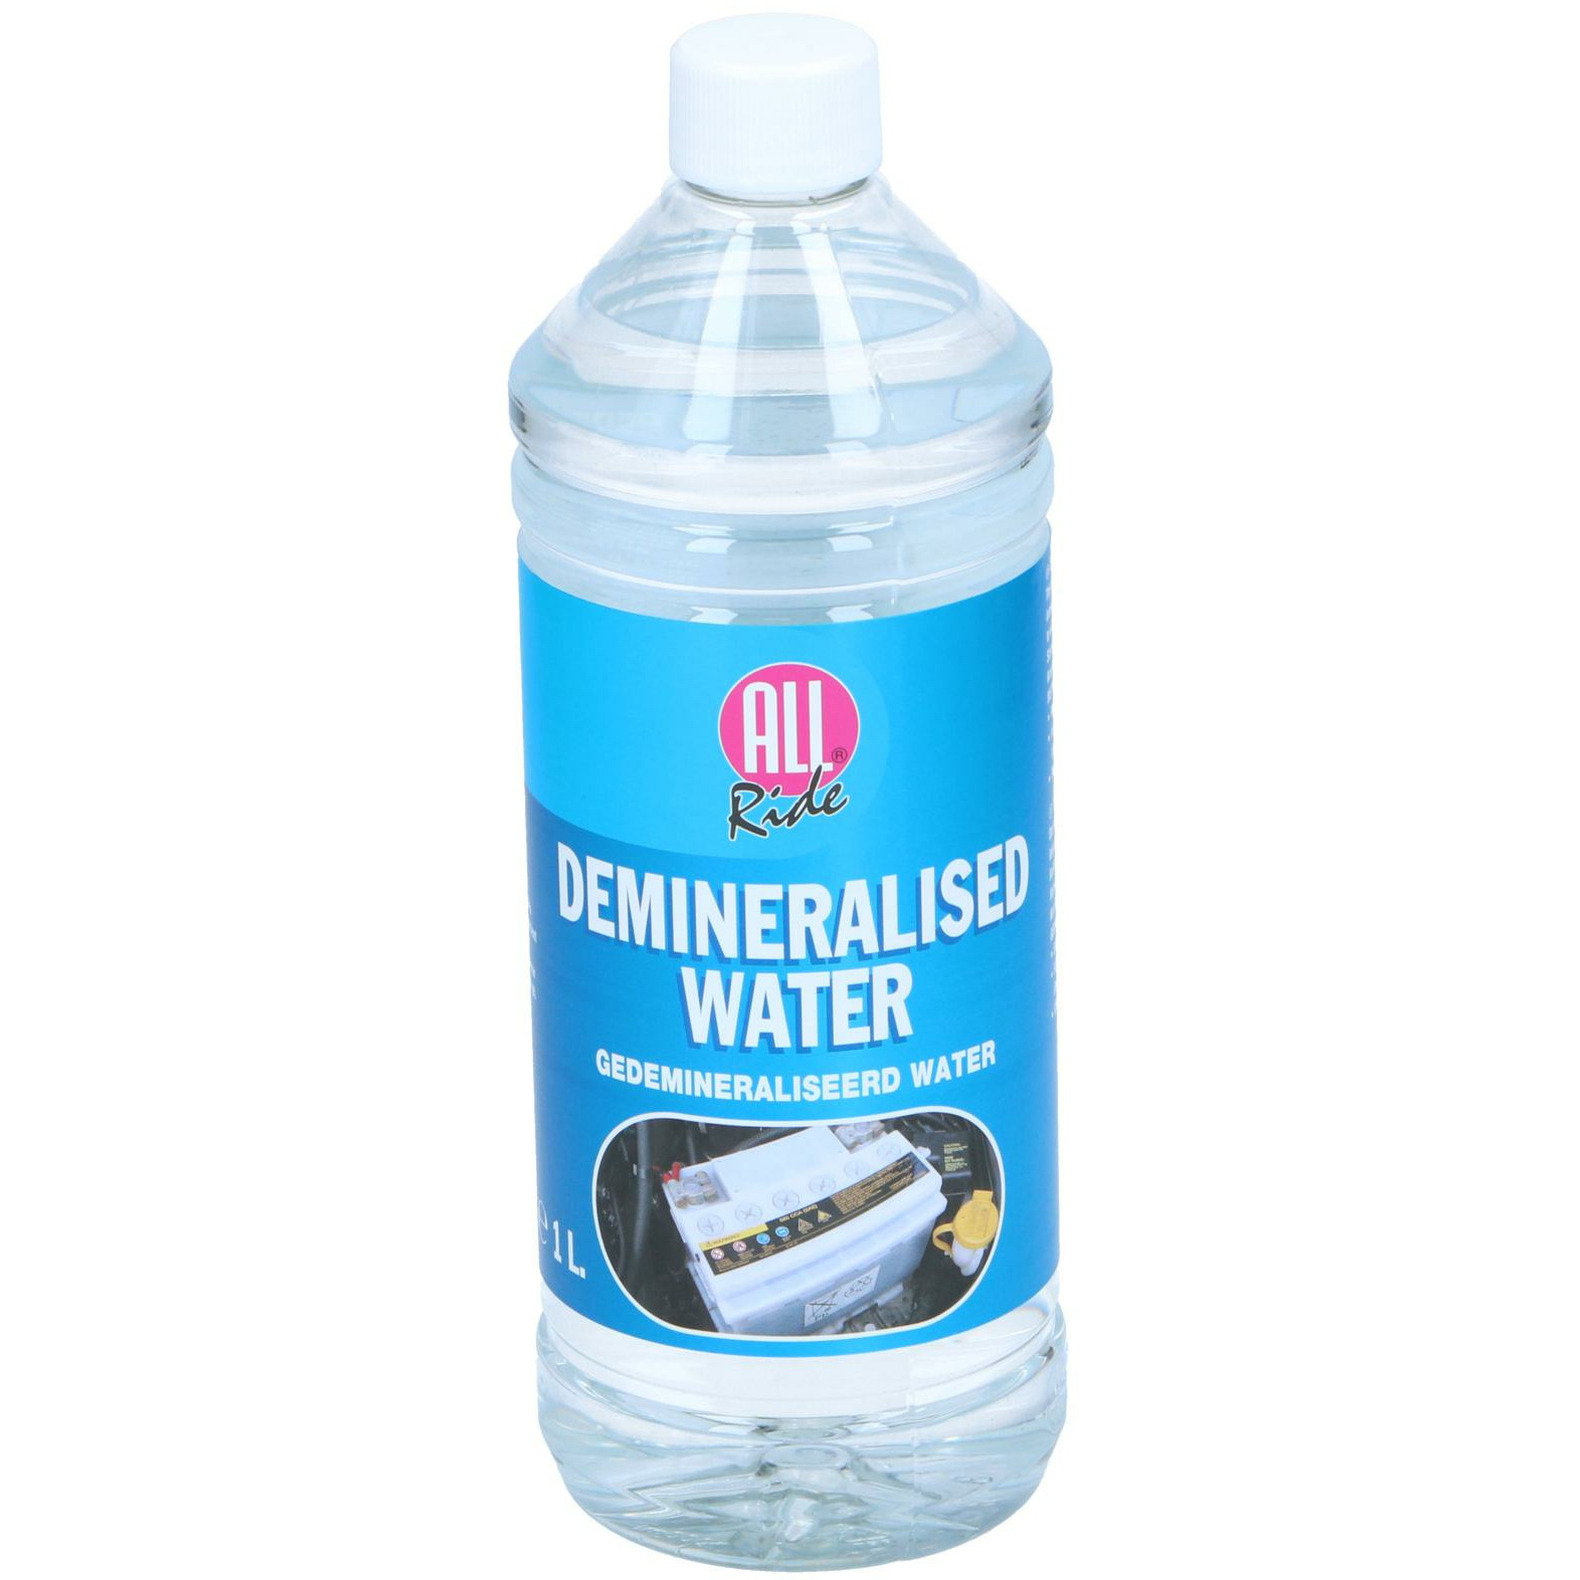 Accuwater-Demiwater gedemineraliseerd water fles 1 liter- water zonder zouten